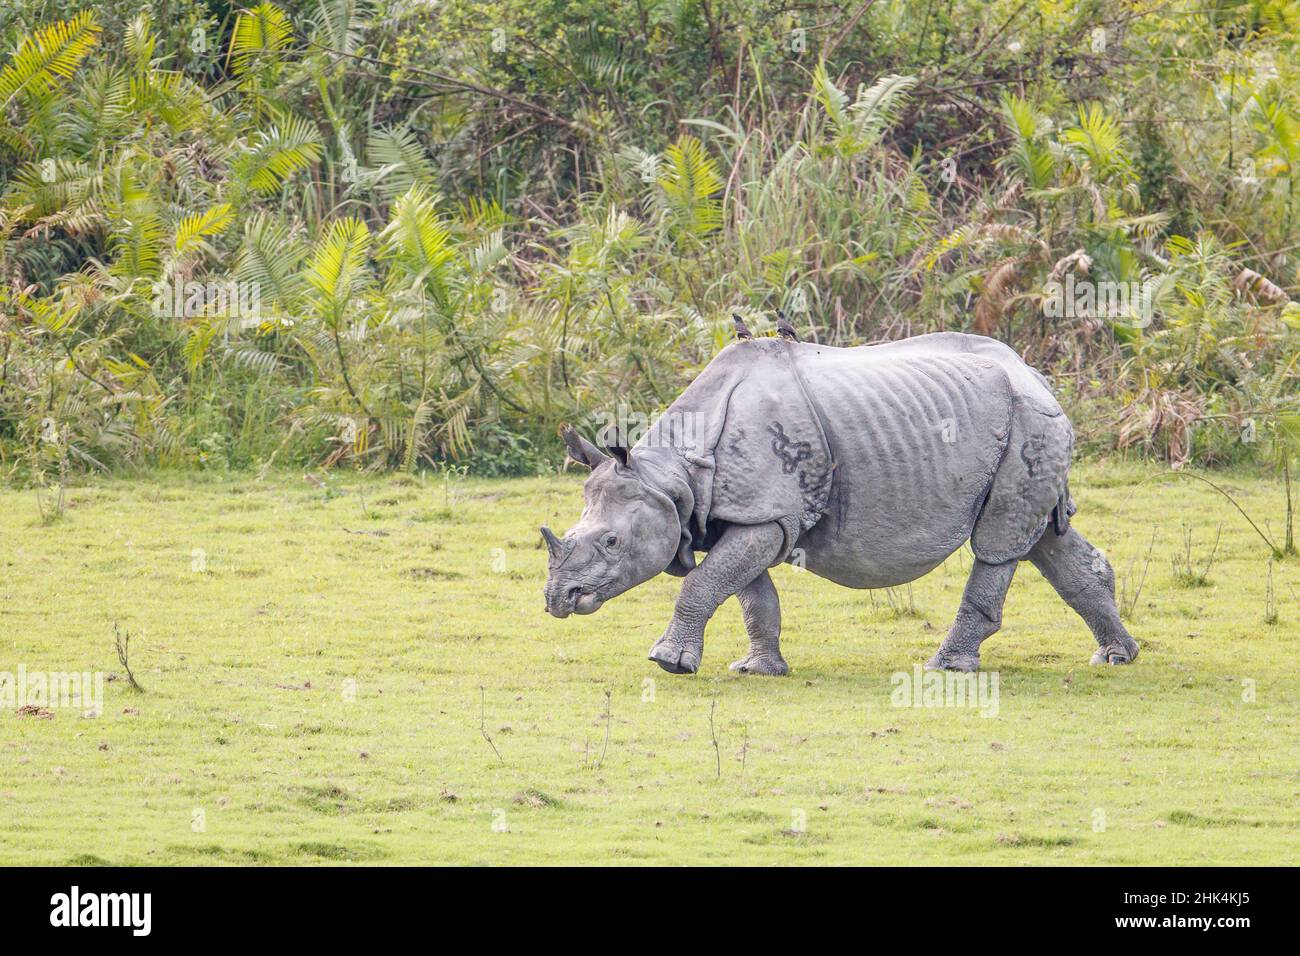 Rhinocéros indien, rhinocéros unicornis, pâturage.Parc national de Kaziranga, Assam, Inde Banque D'Images